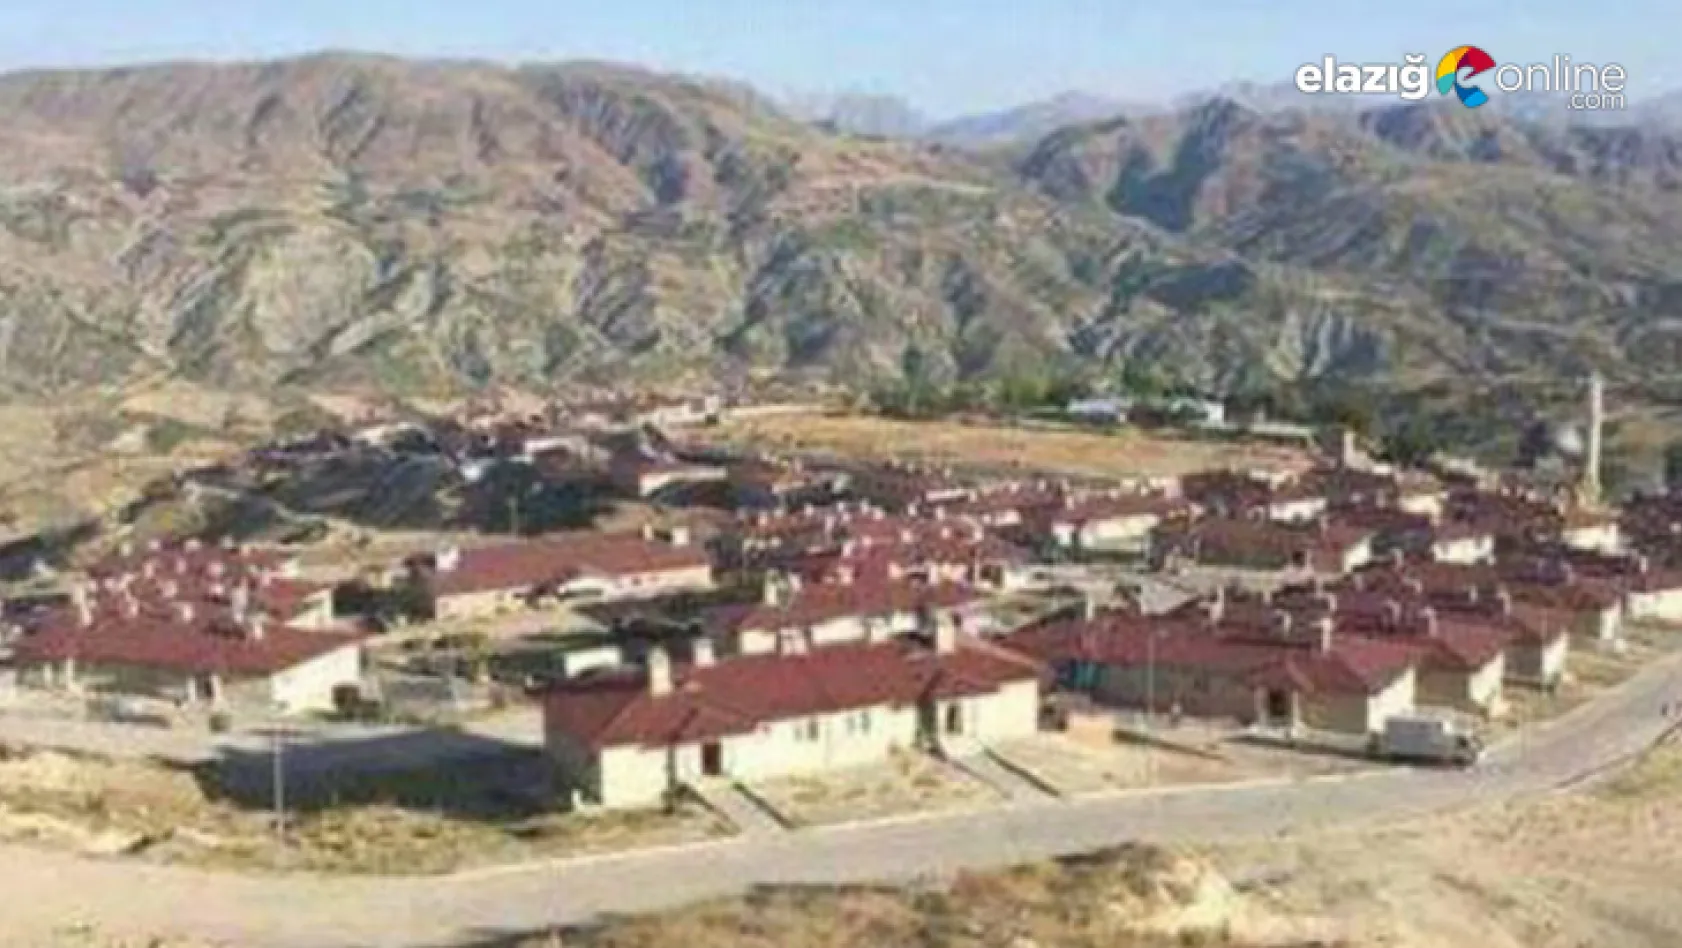 Elazığ'da bir köy Covid-19 nedeniyle karantinaya alındı